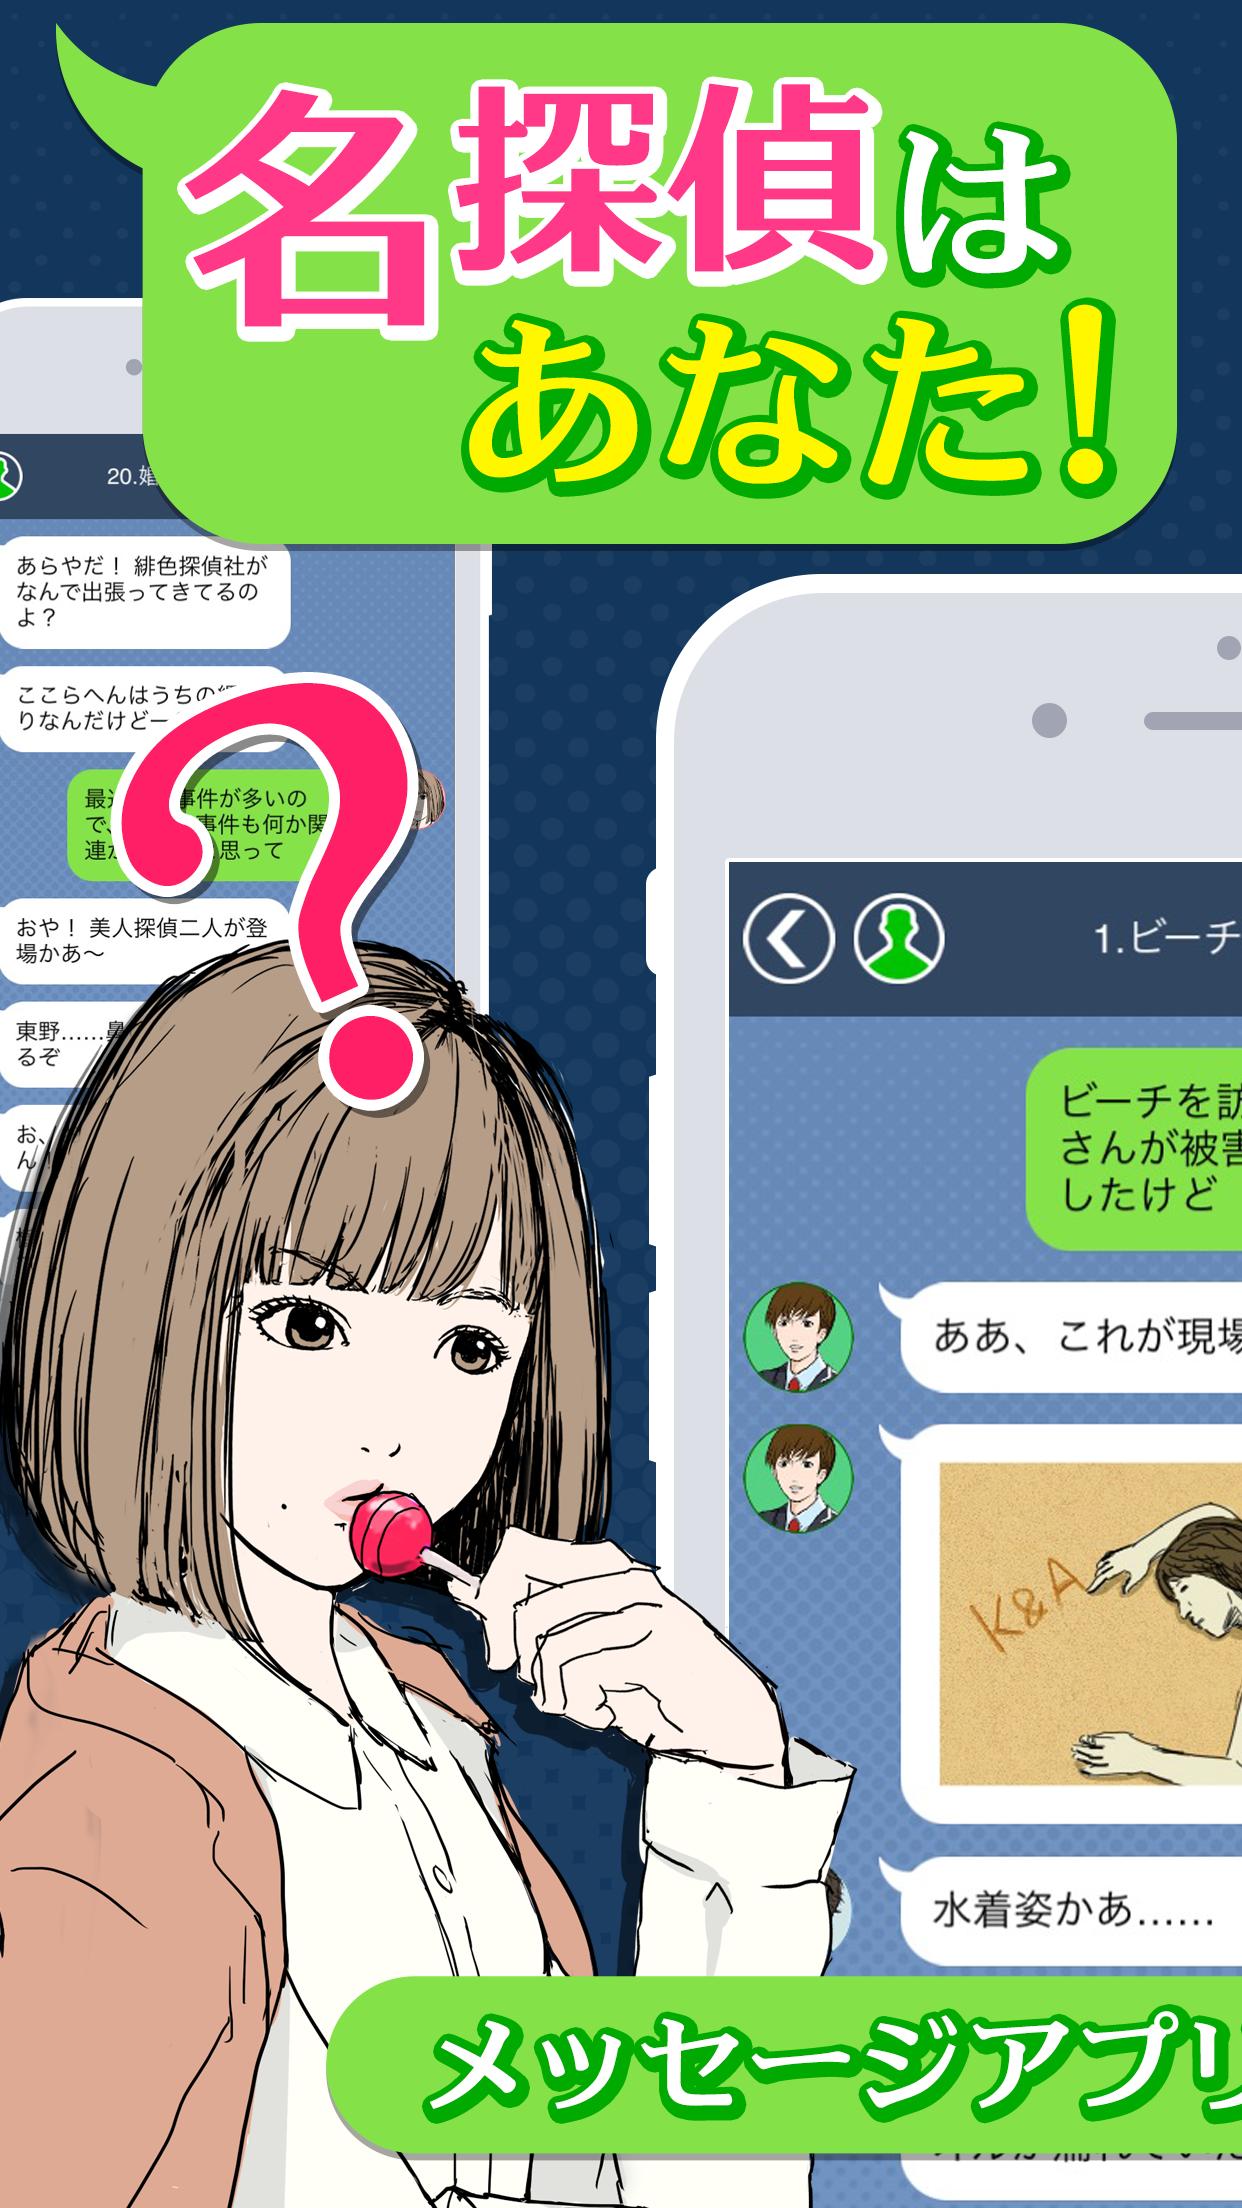 謎解き 緋色探偵社と100の推理 メッセージアプリ風ゲーム For Android Apk Download